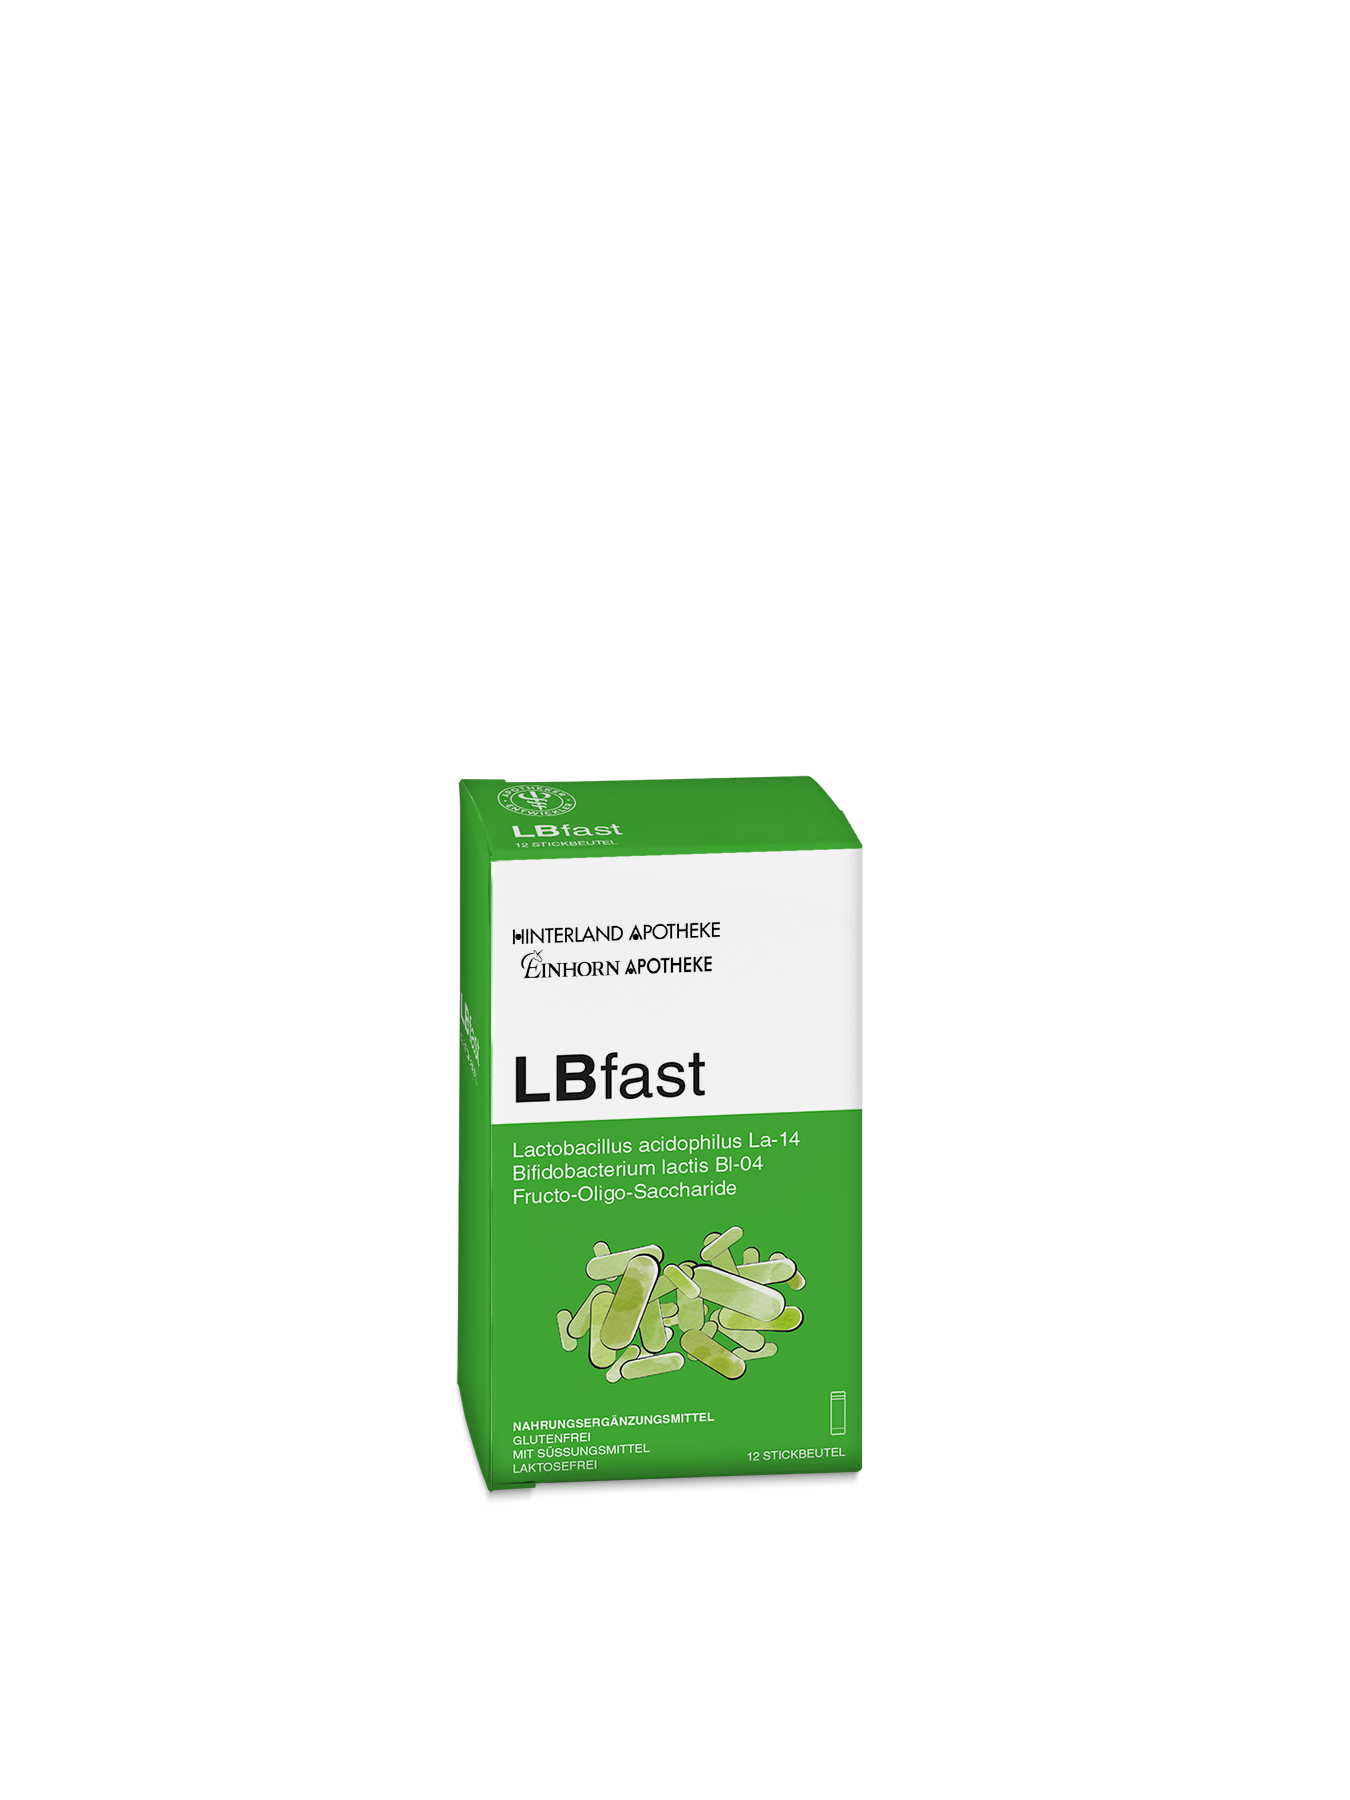 LBfast mit 12 Stickbeuteln zu je 1,2g Pulver zum Einnehmen